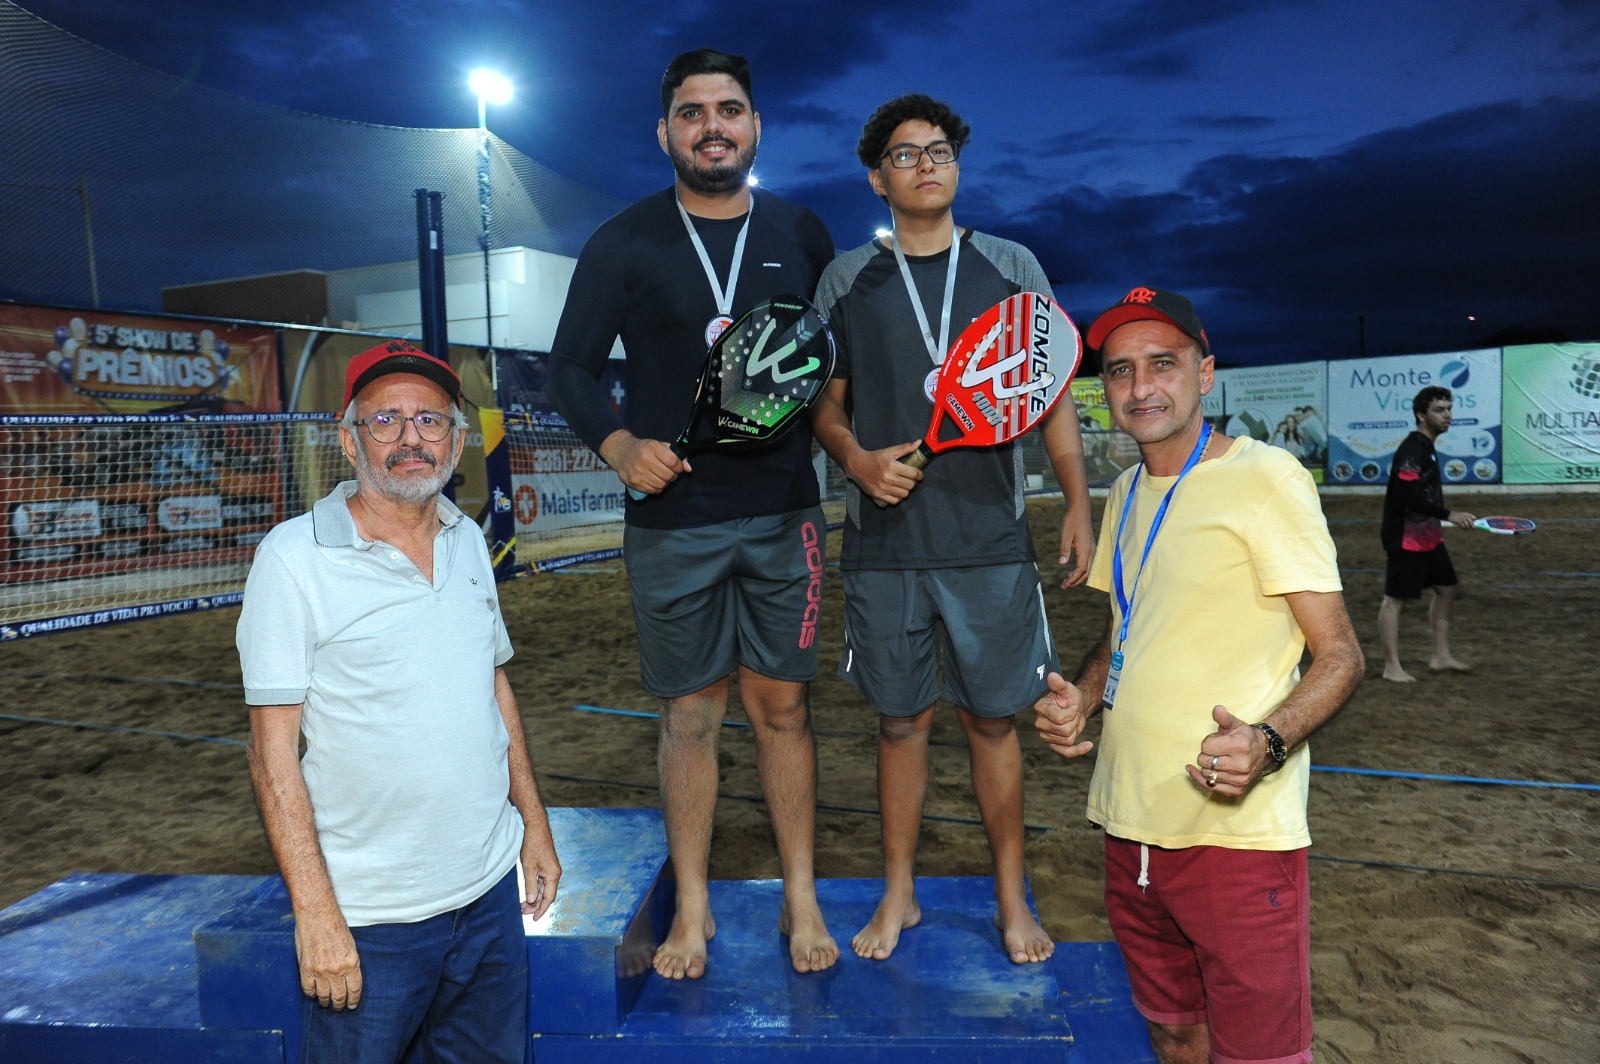 Jogos-de-Verao-15 Com participação recorde, competição de beach tennis encerra com chave de ouro a 1ª edição dos Jogos de Verão de Monteiro